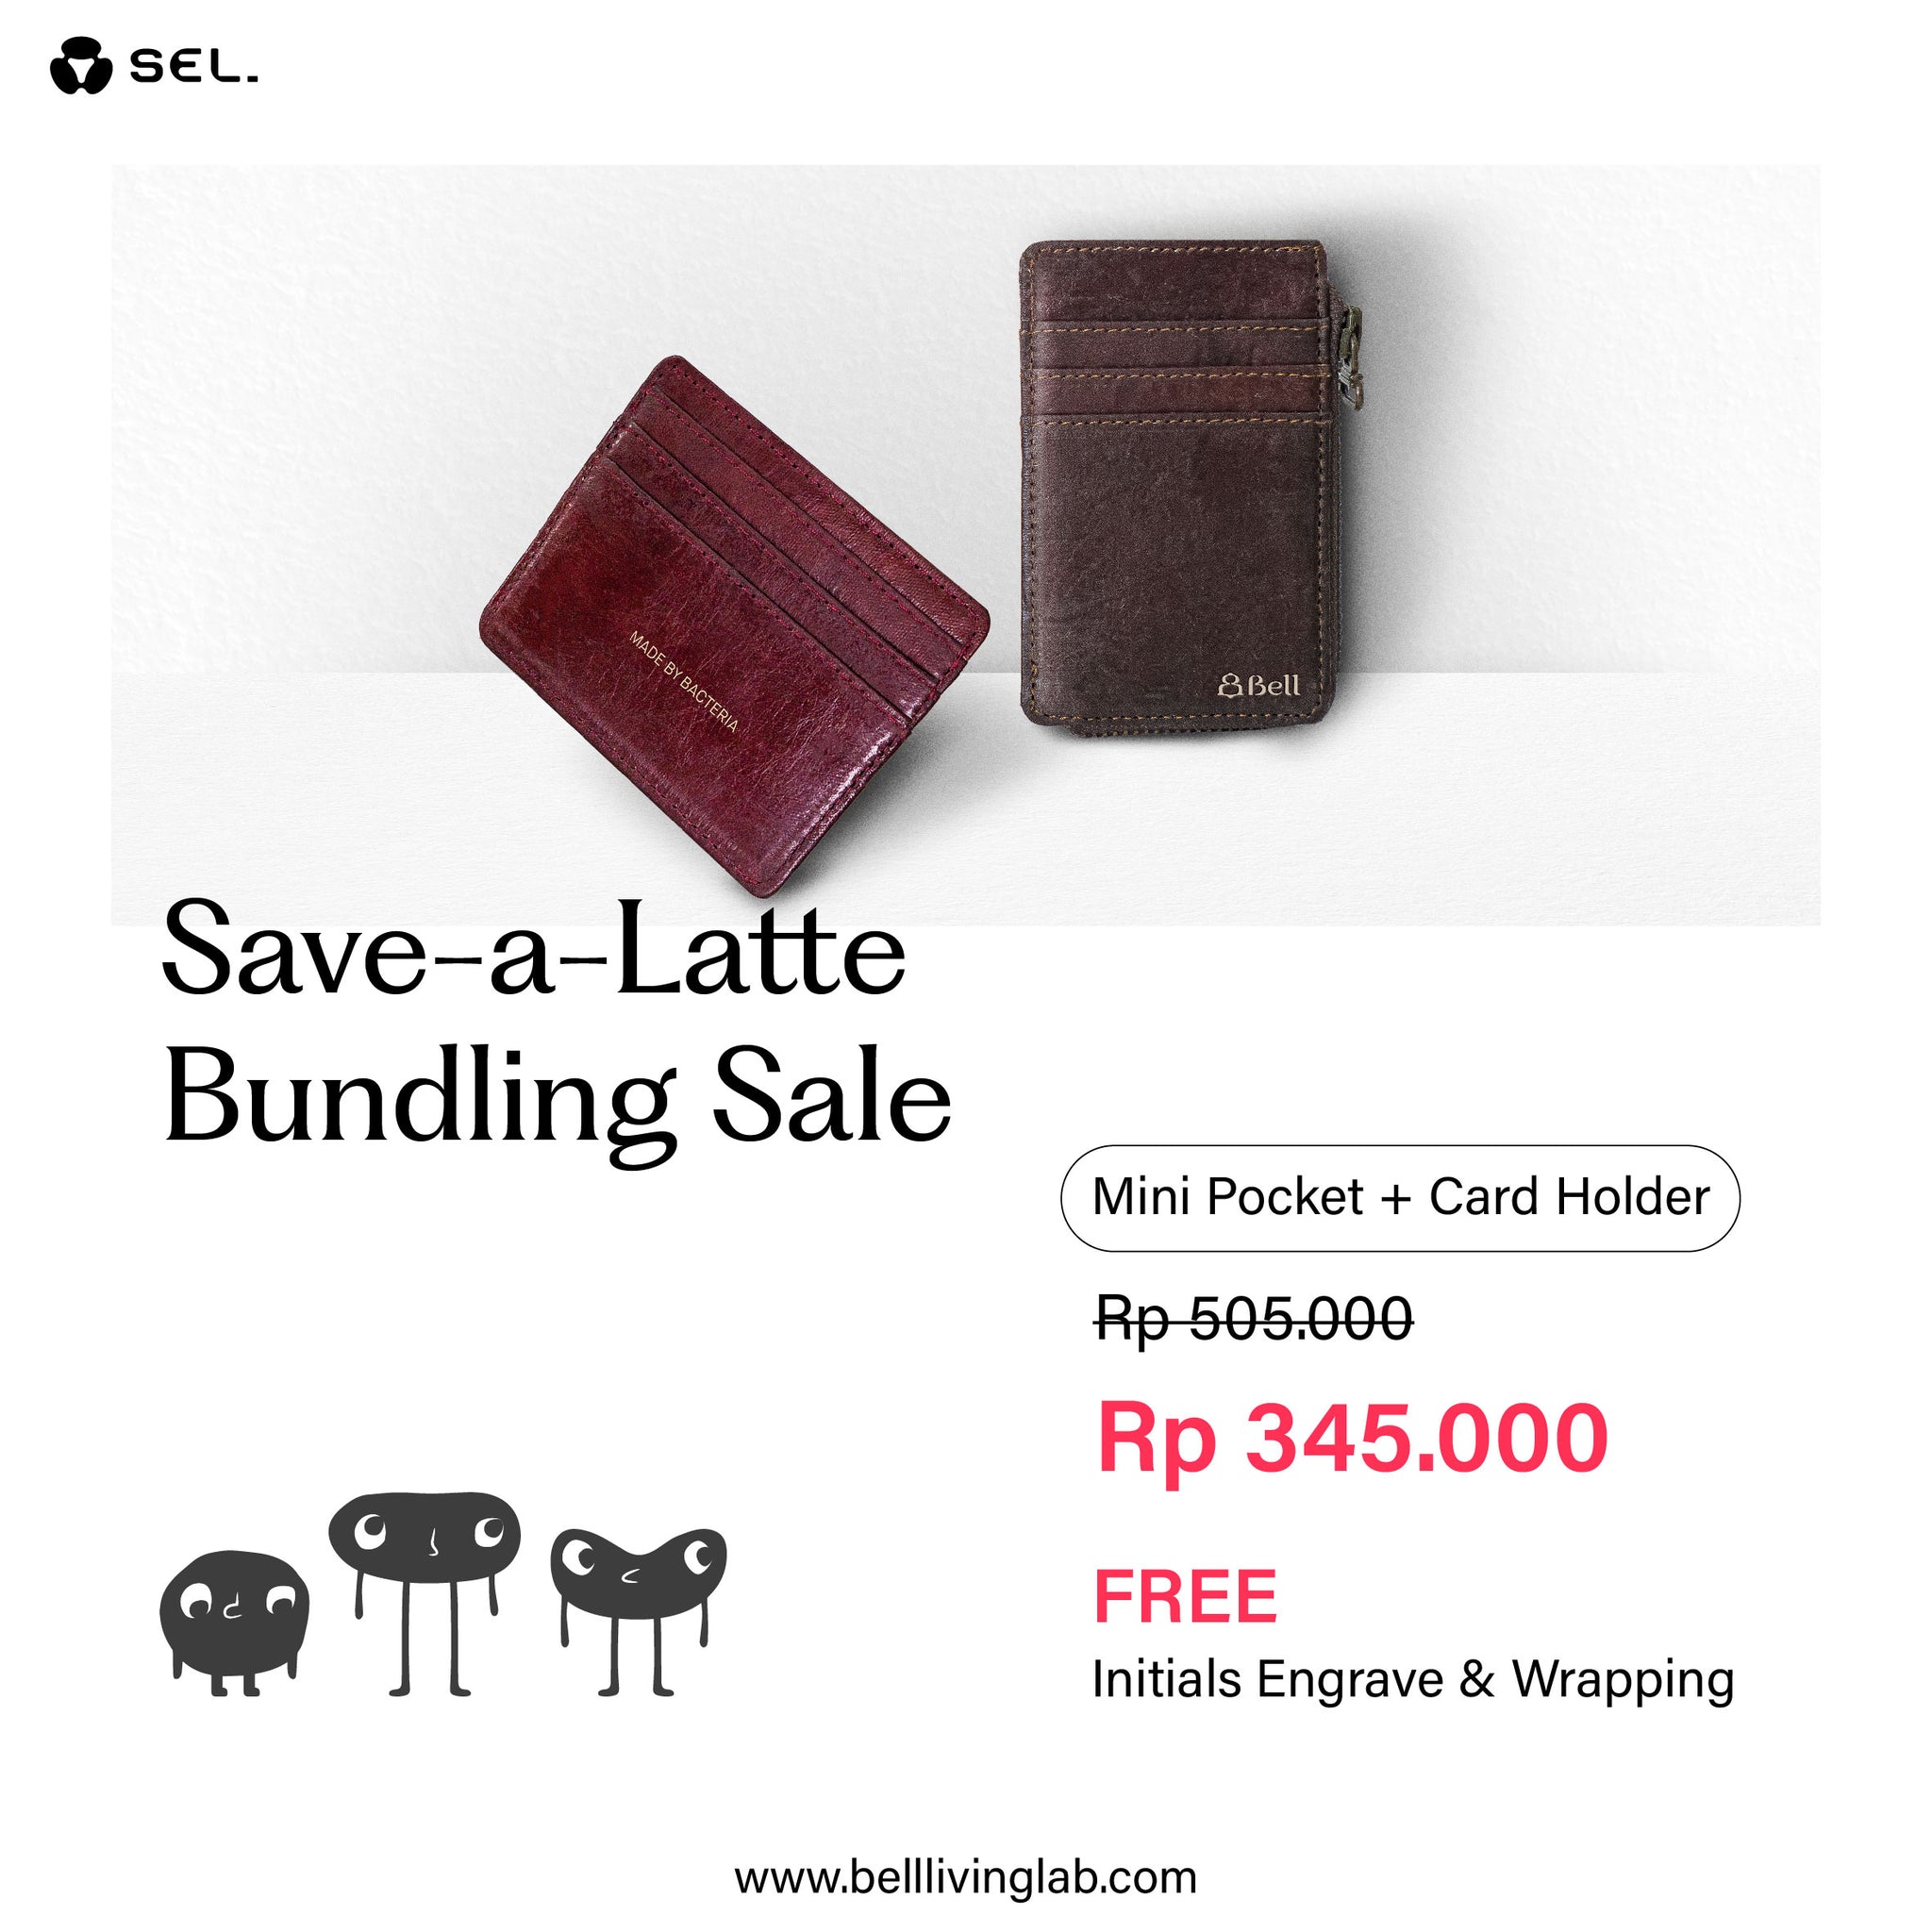 Save-a-Latte Bundling Sale Mini Pocket + Card Holder